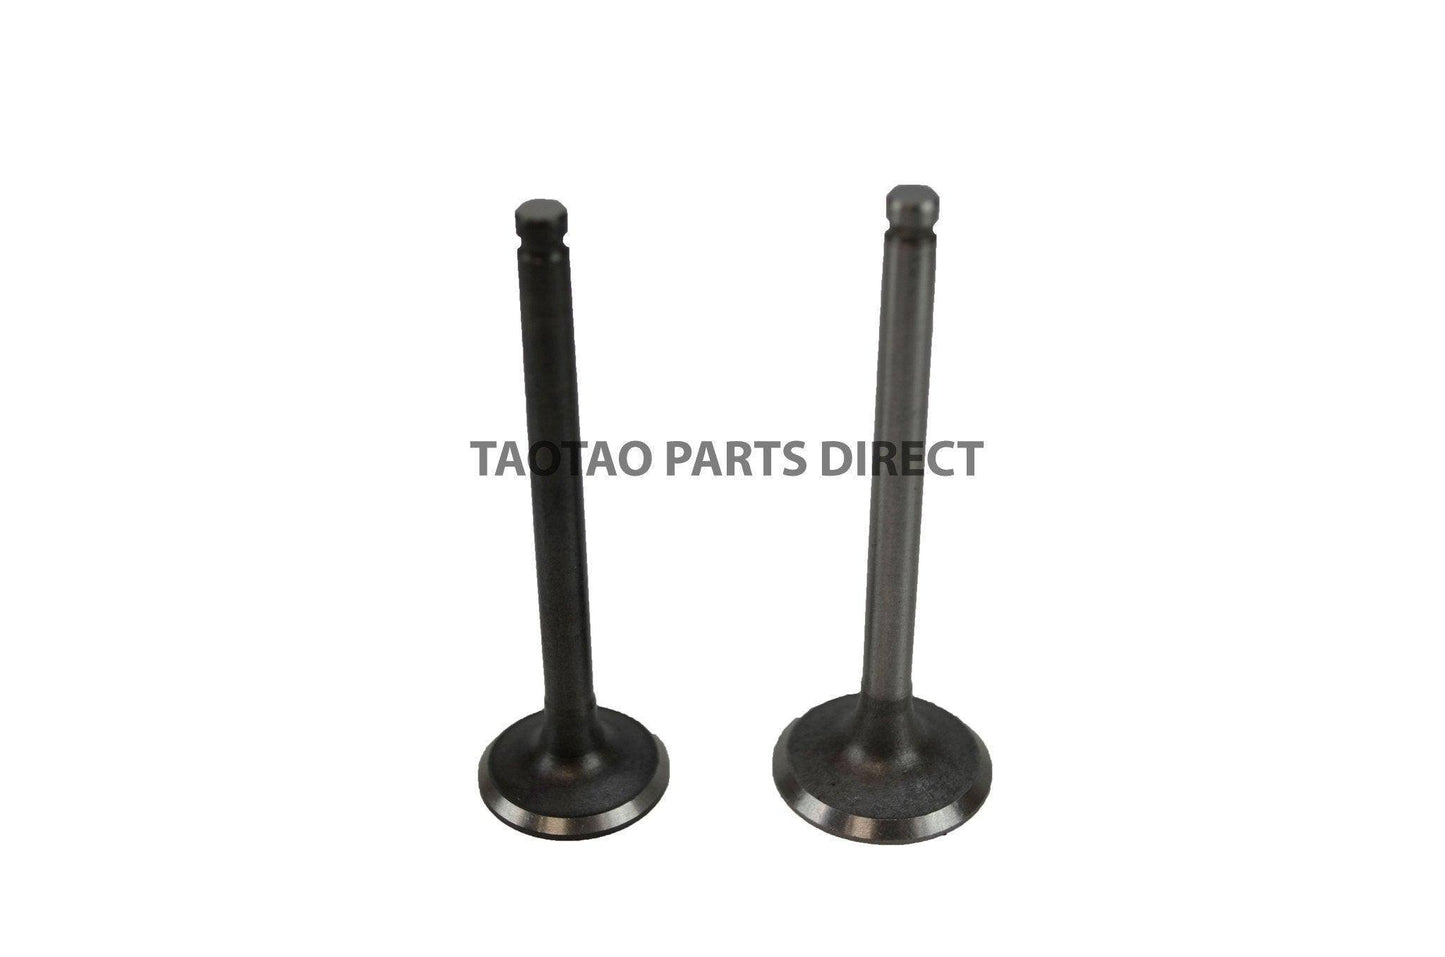 110cc Intake and Exhaust Valve Set - TaoTao Parts Direct